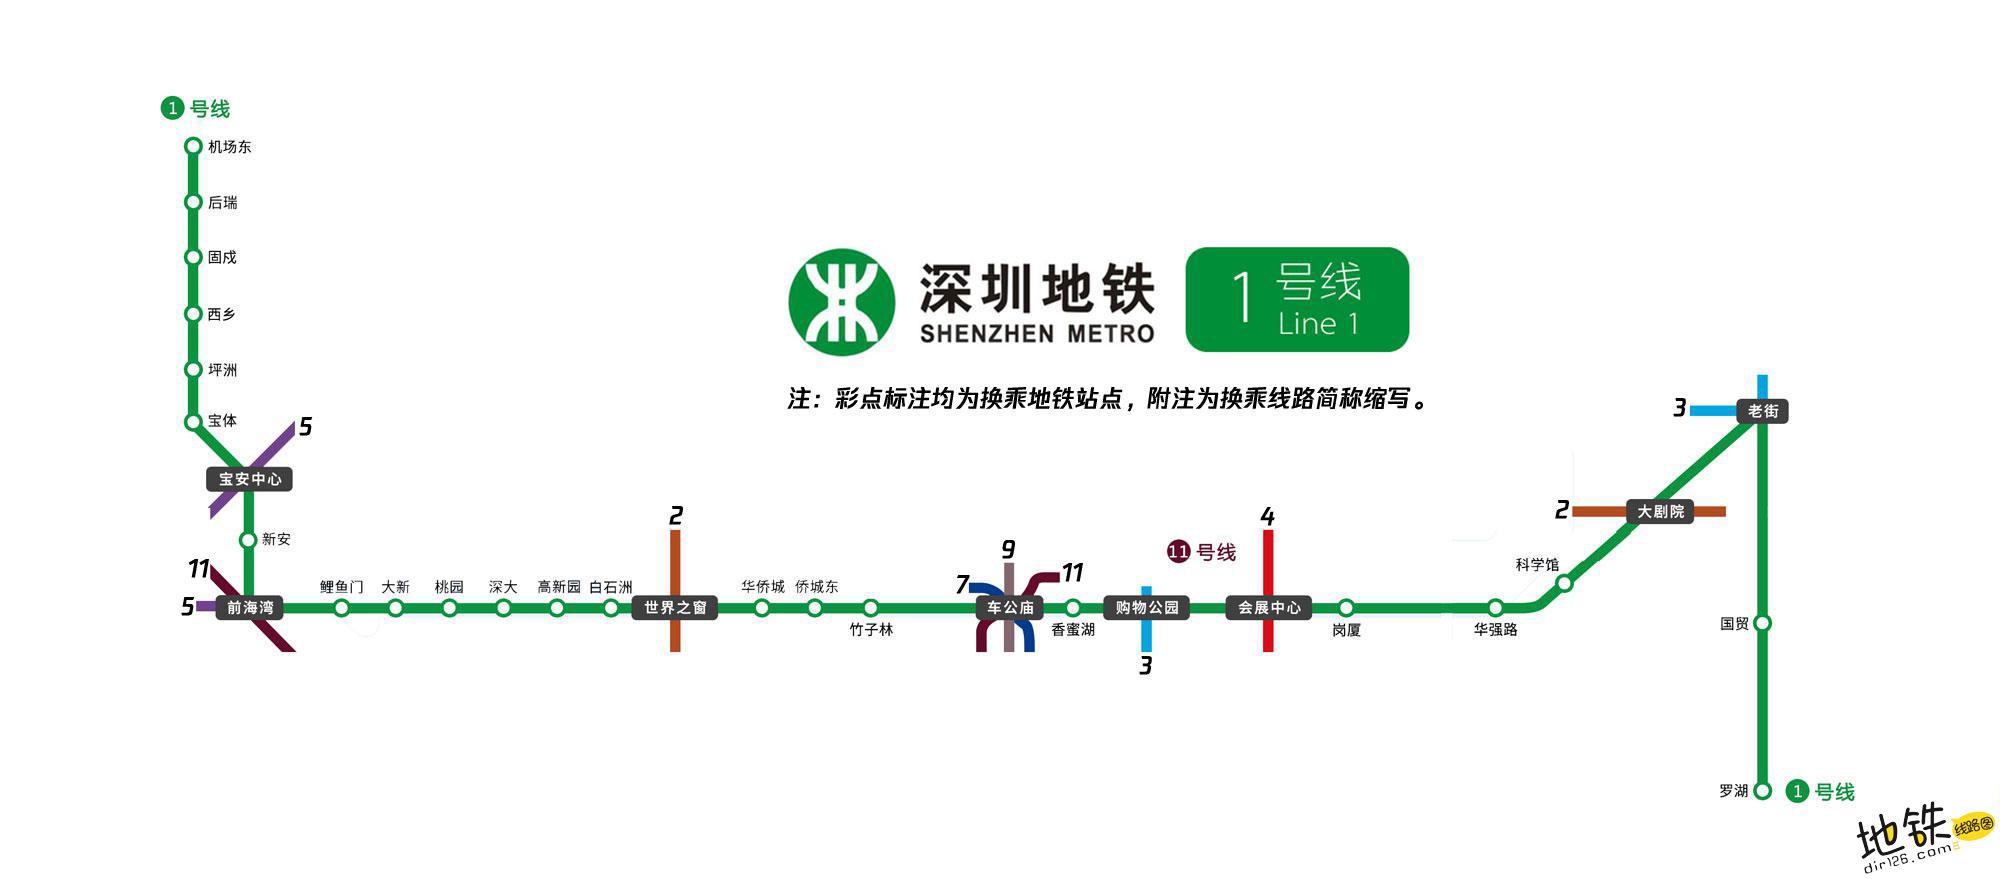 哈尔滨地铁1号线线路图_运营时间票价站点_查询下载|地铁图